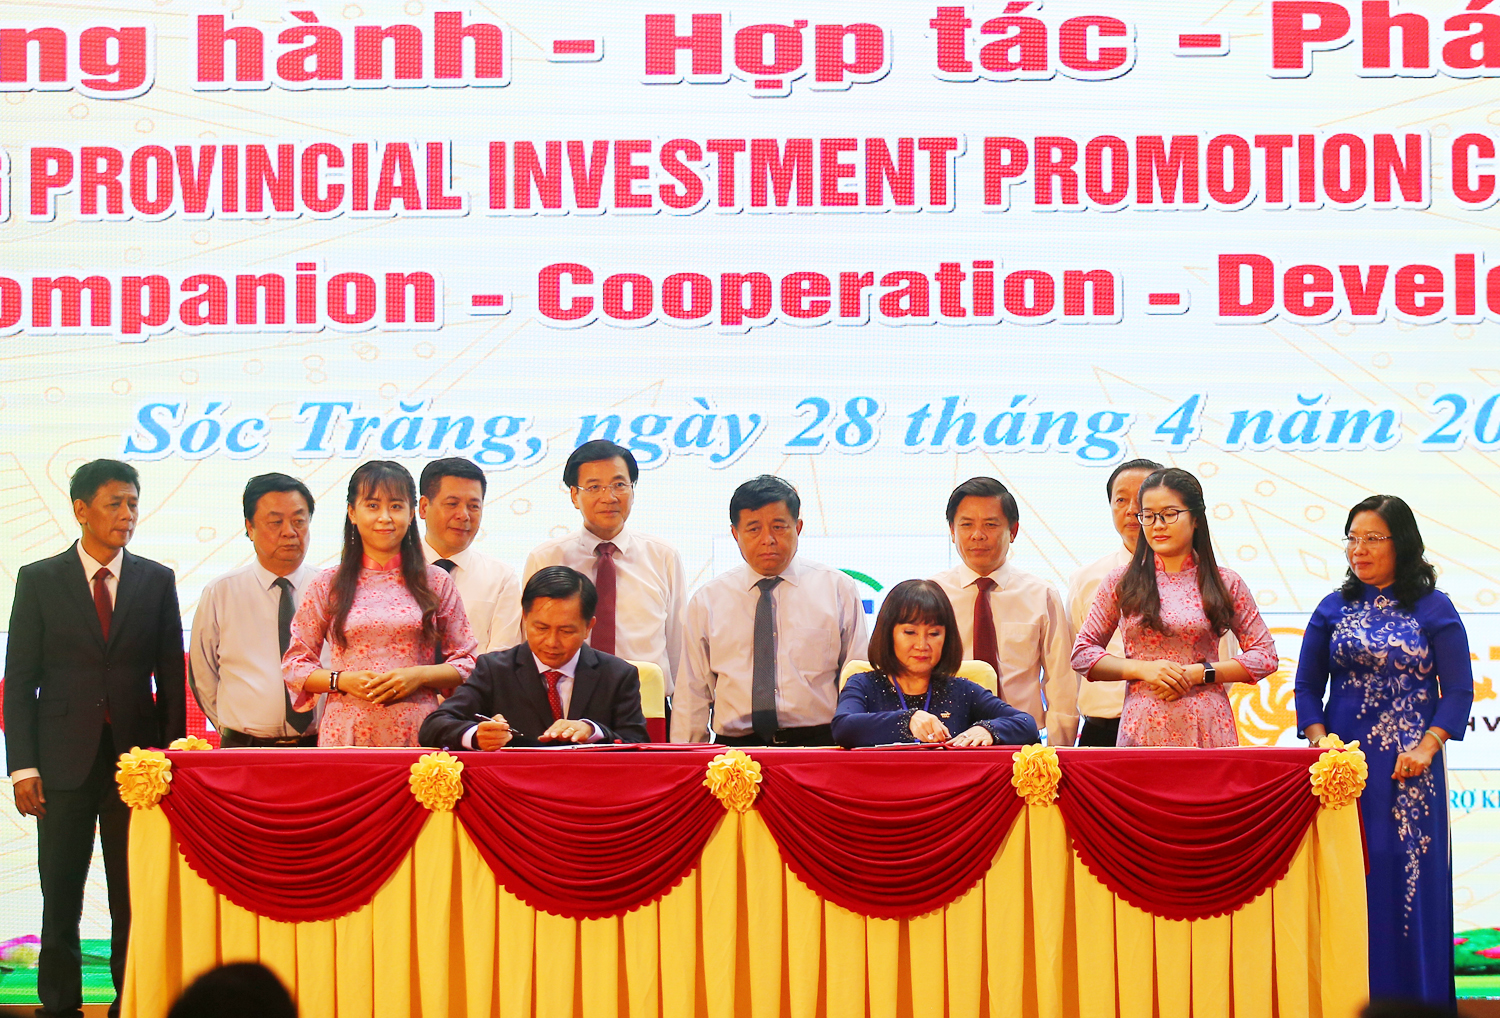 Thủ tướng Phạm Minh Chính nói về 12 chữ trong thu hút đầu tư - 3